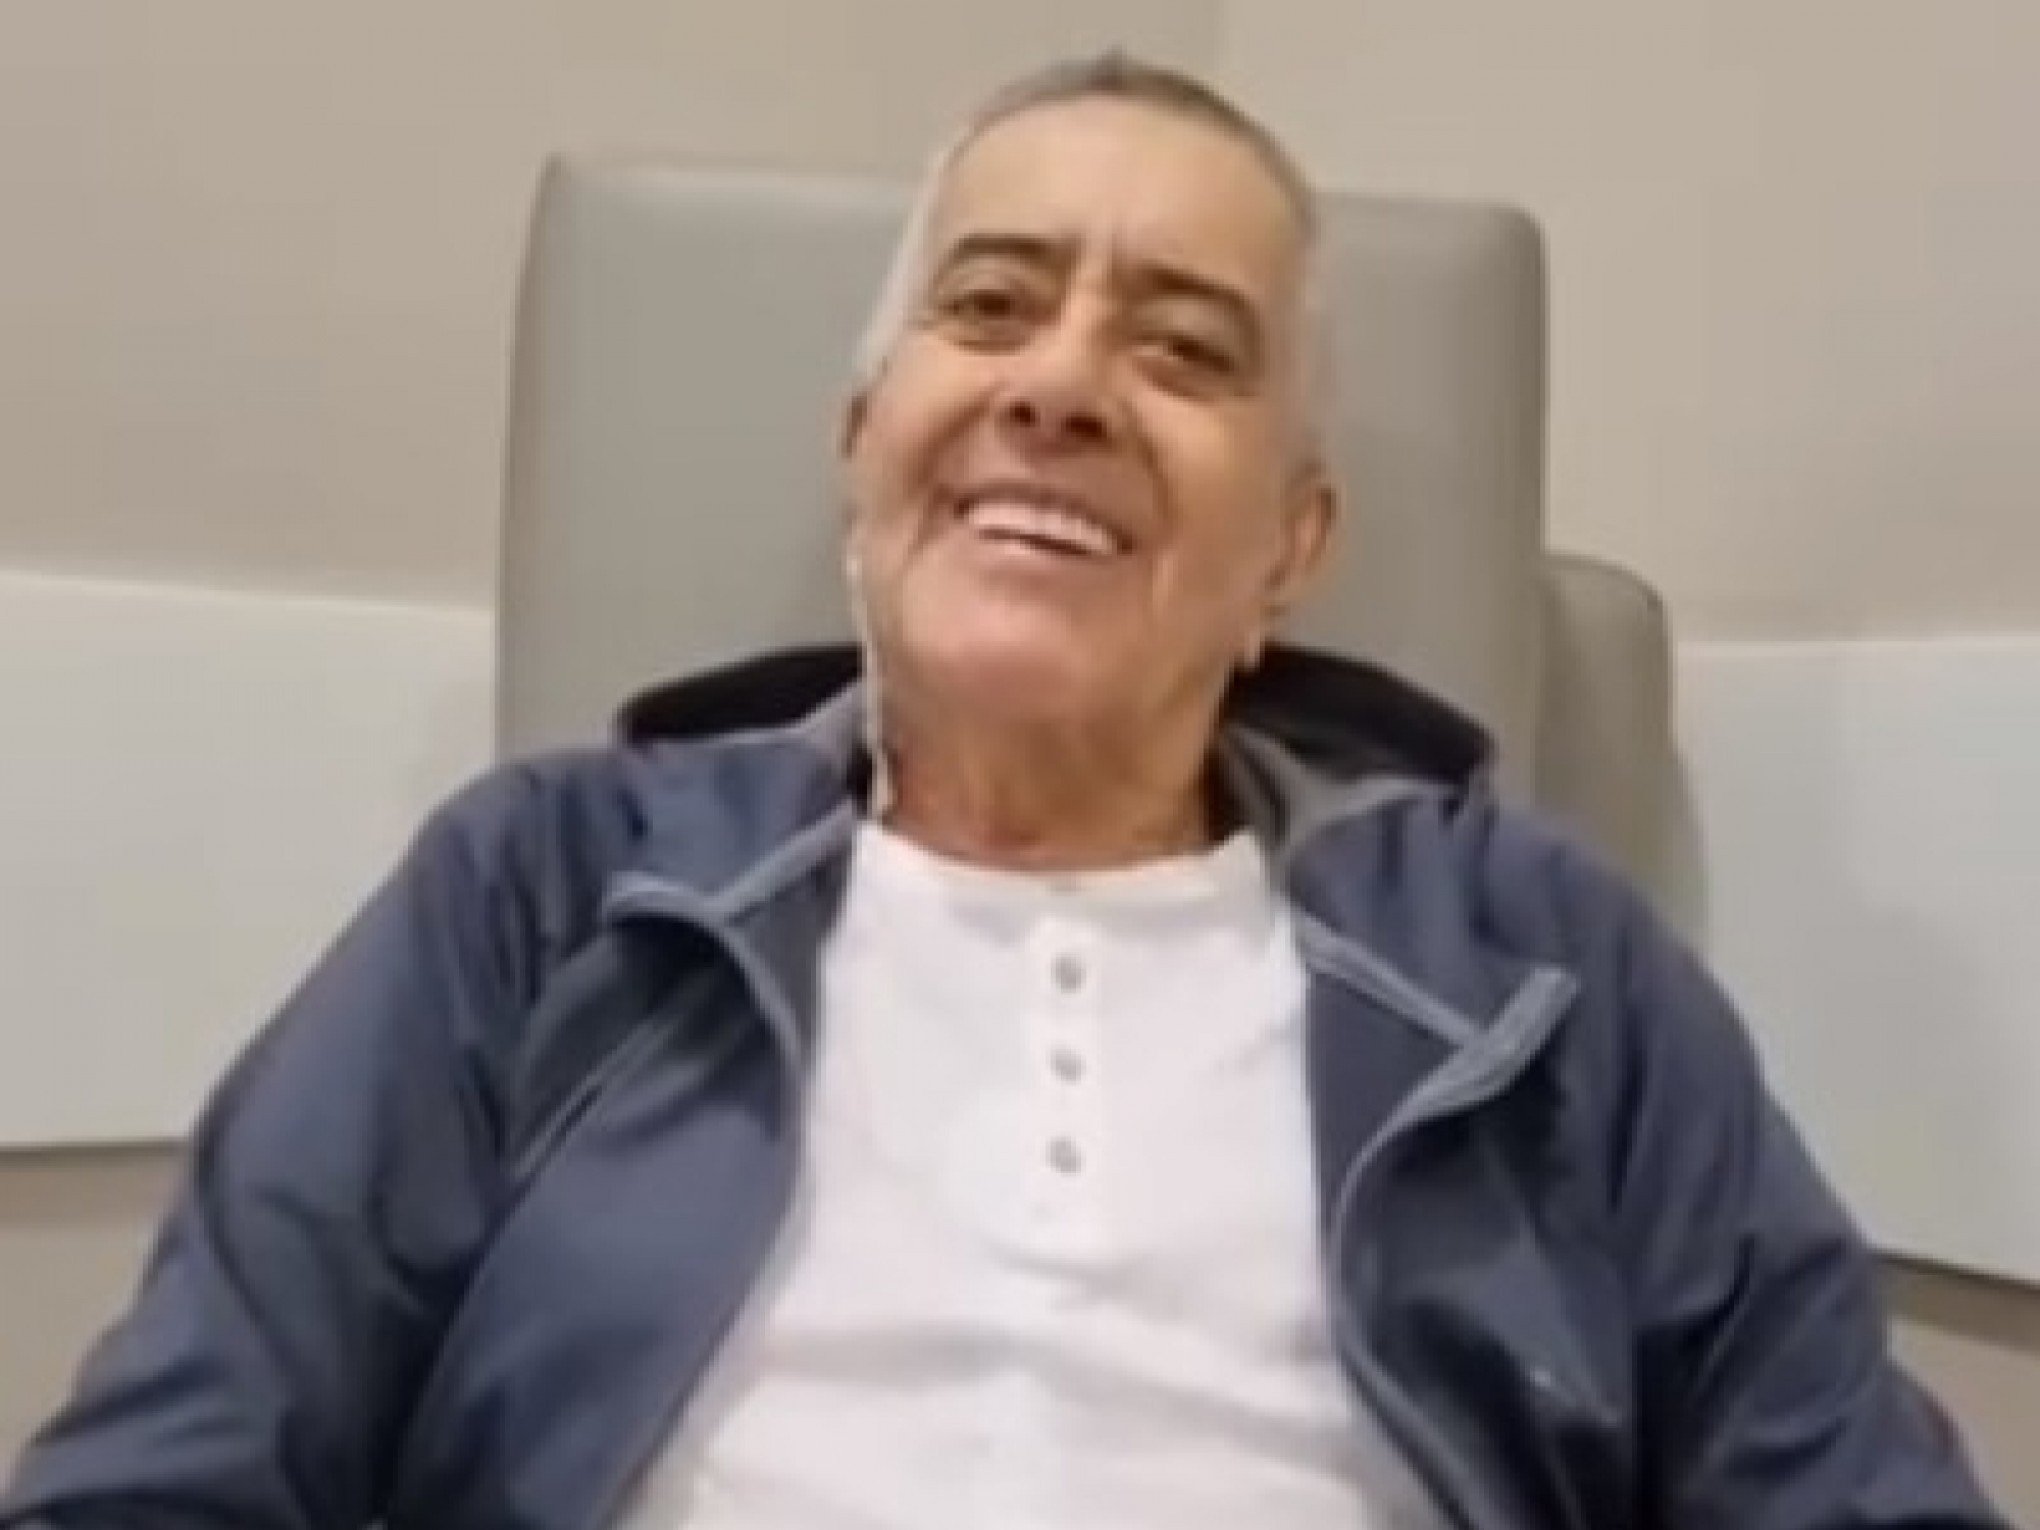 Com Jairo Jorge afastado do cargo, Nedy grava vídeo do hospital e avisa: "Estou voltando"